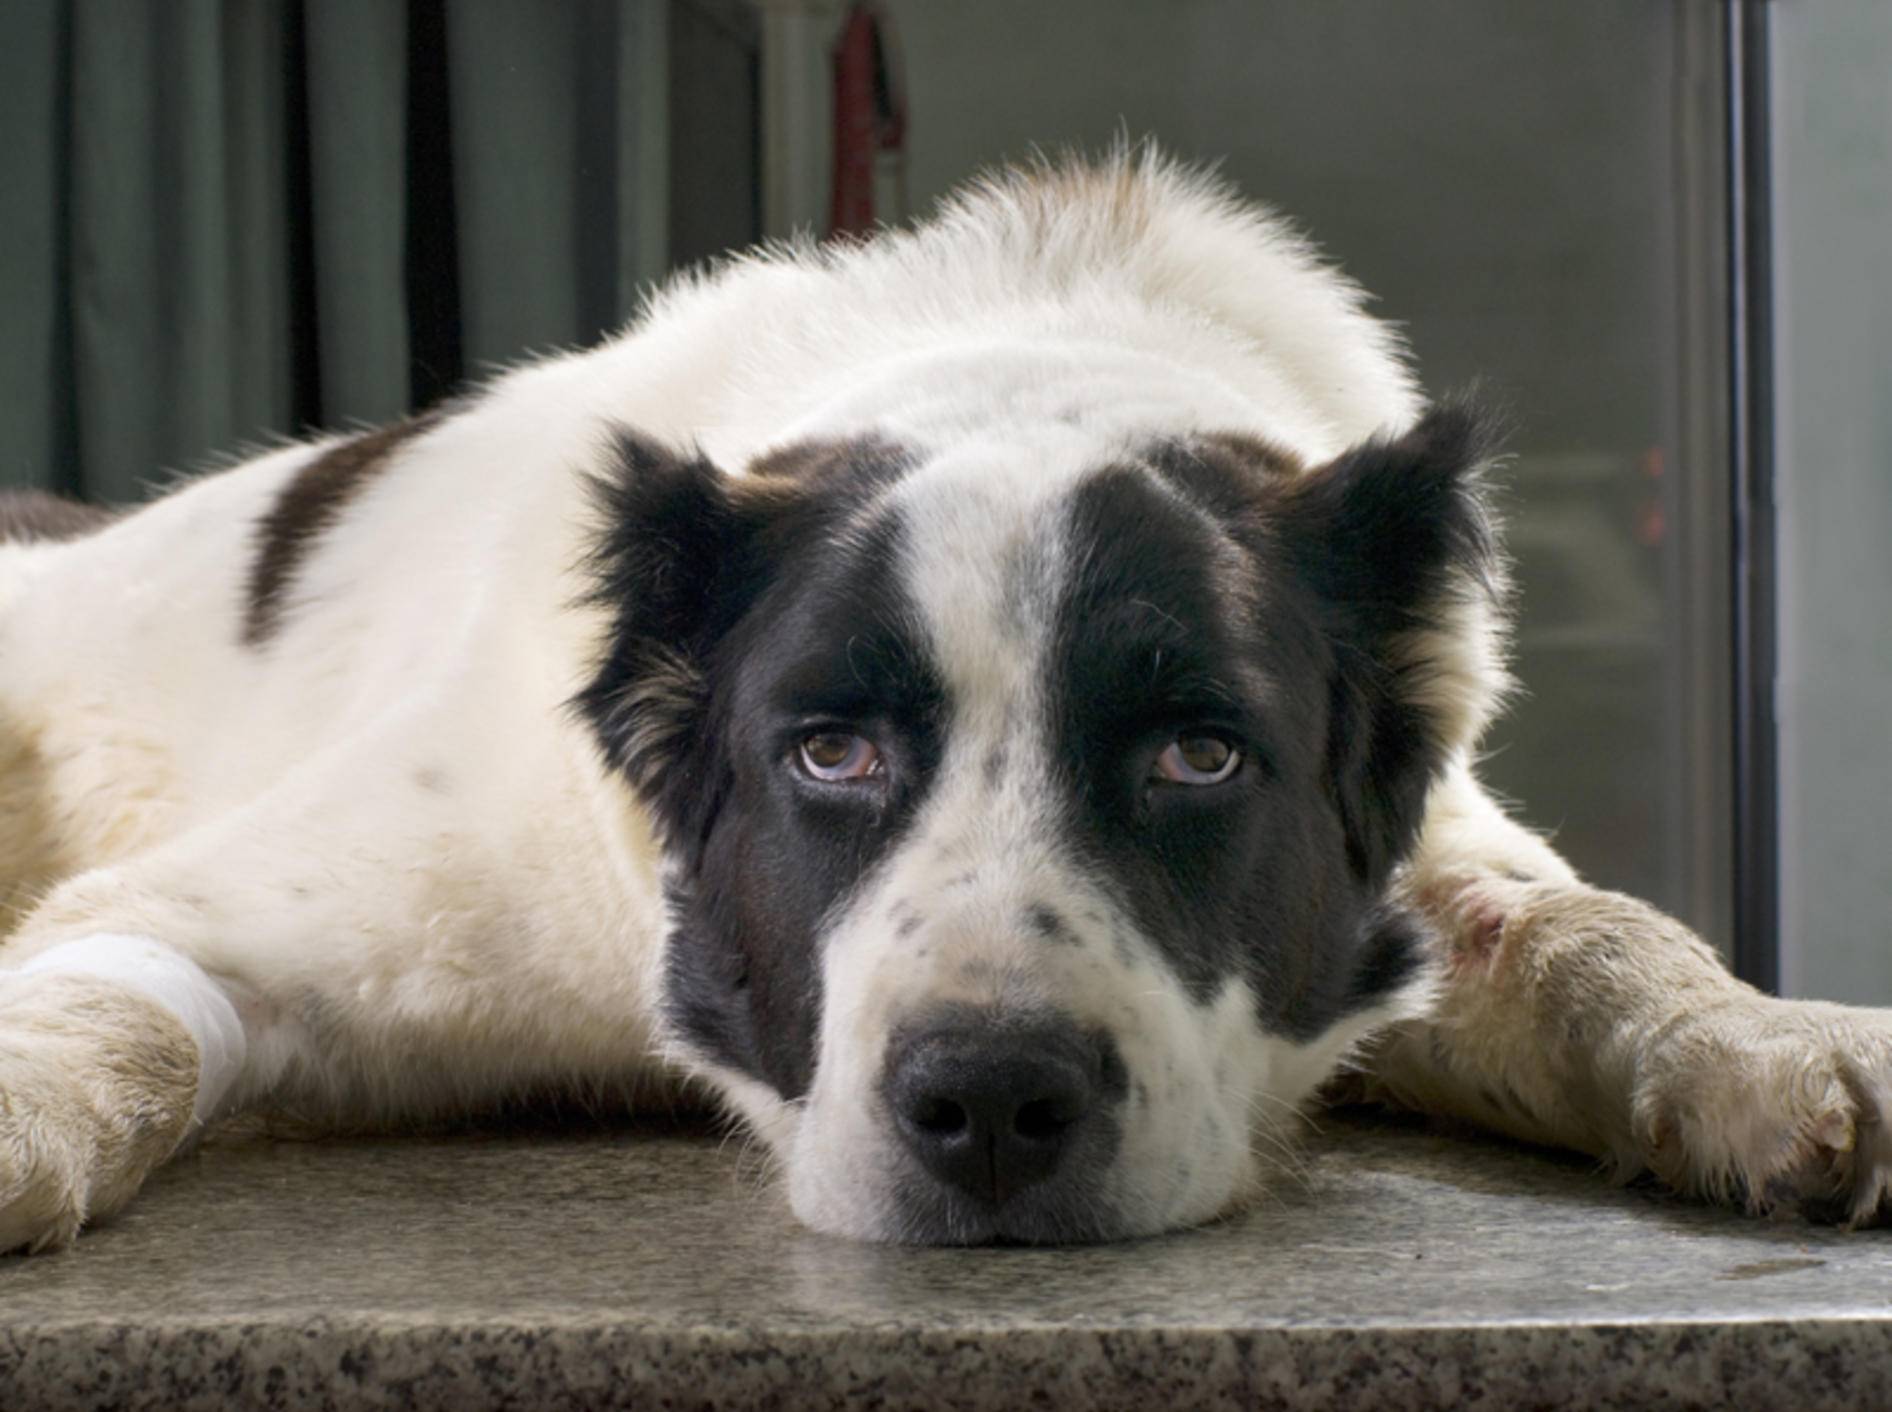 Hat der alte Hund noch Freude am Leben oder macht ihm die Demenz zu schaffen? – Shutterstock / Byelikova Oksana